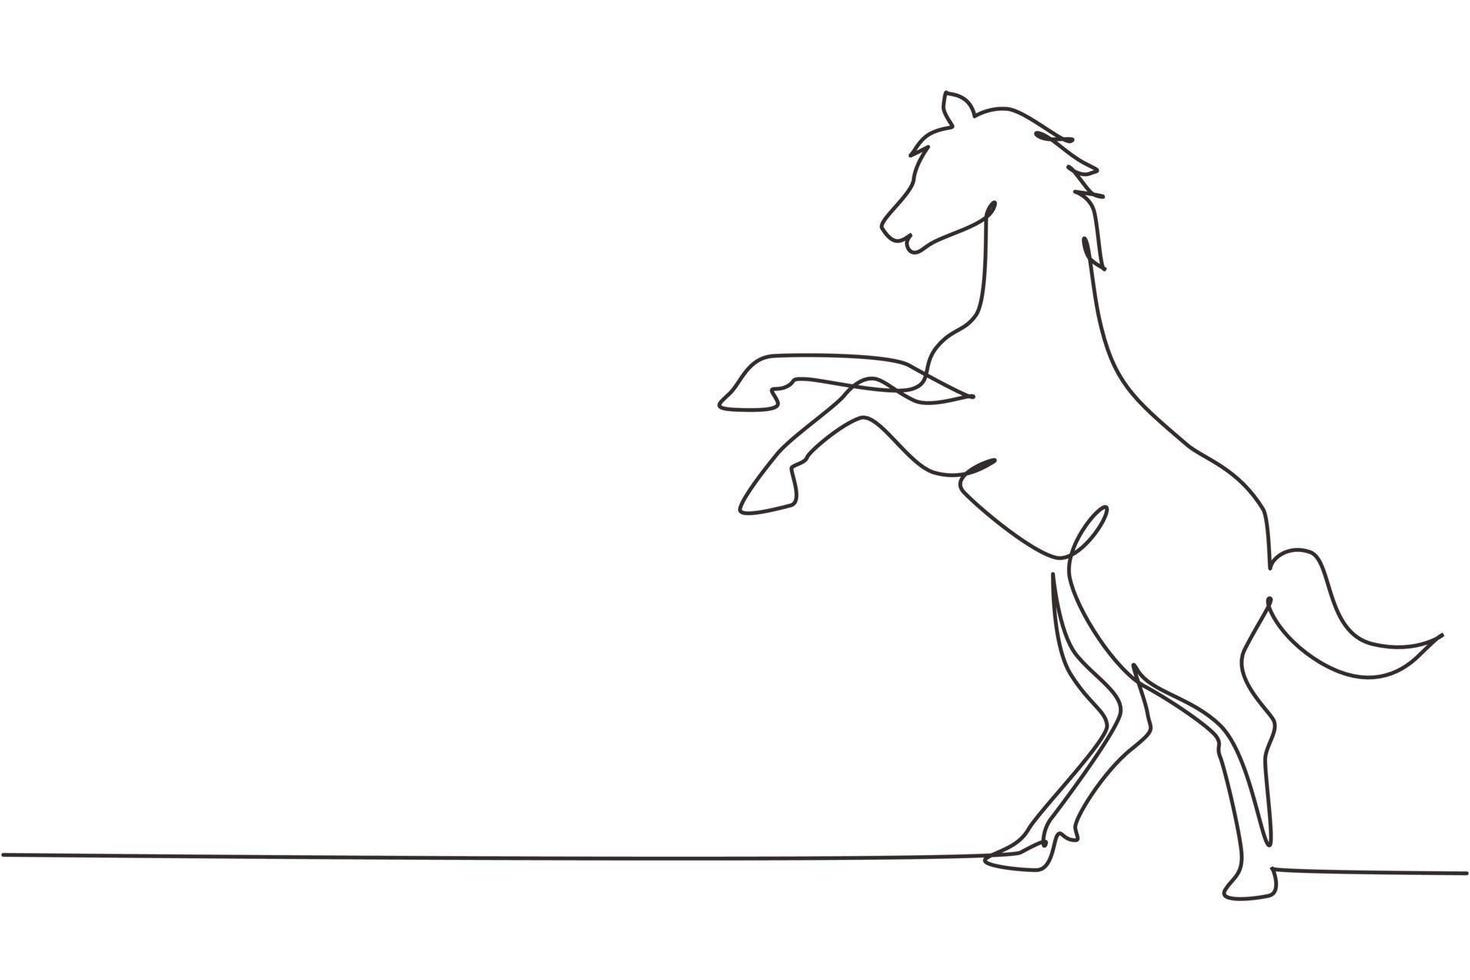 enkele doorlopende lijntekening die wild paard opvoedt. sterk karakter. springtraining voor paarden. paardenrennen logo symbool, paardensport badge. een lijn tekenen grafisch ontwerp vectorillustratie vector